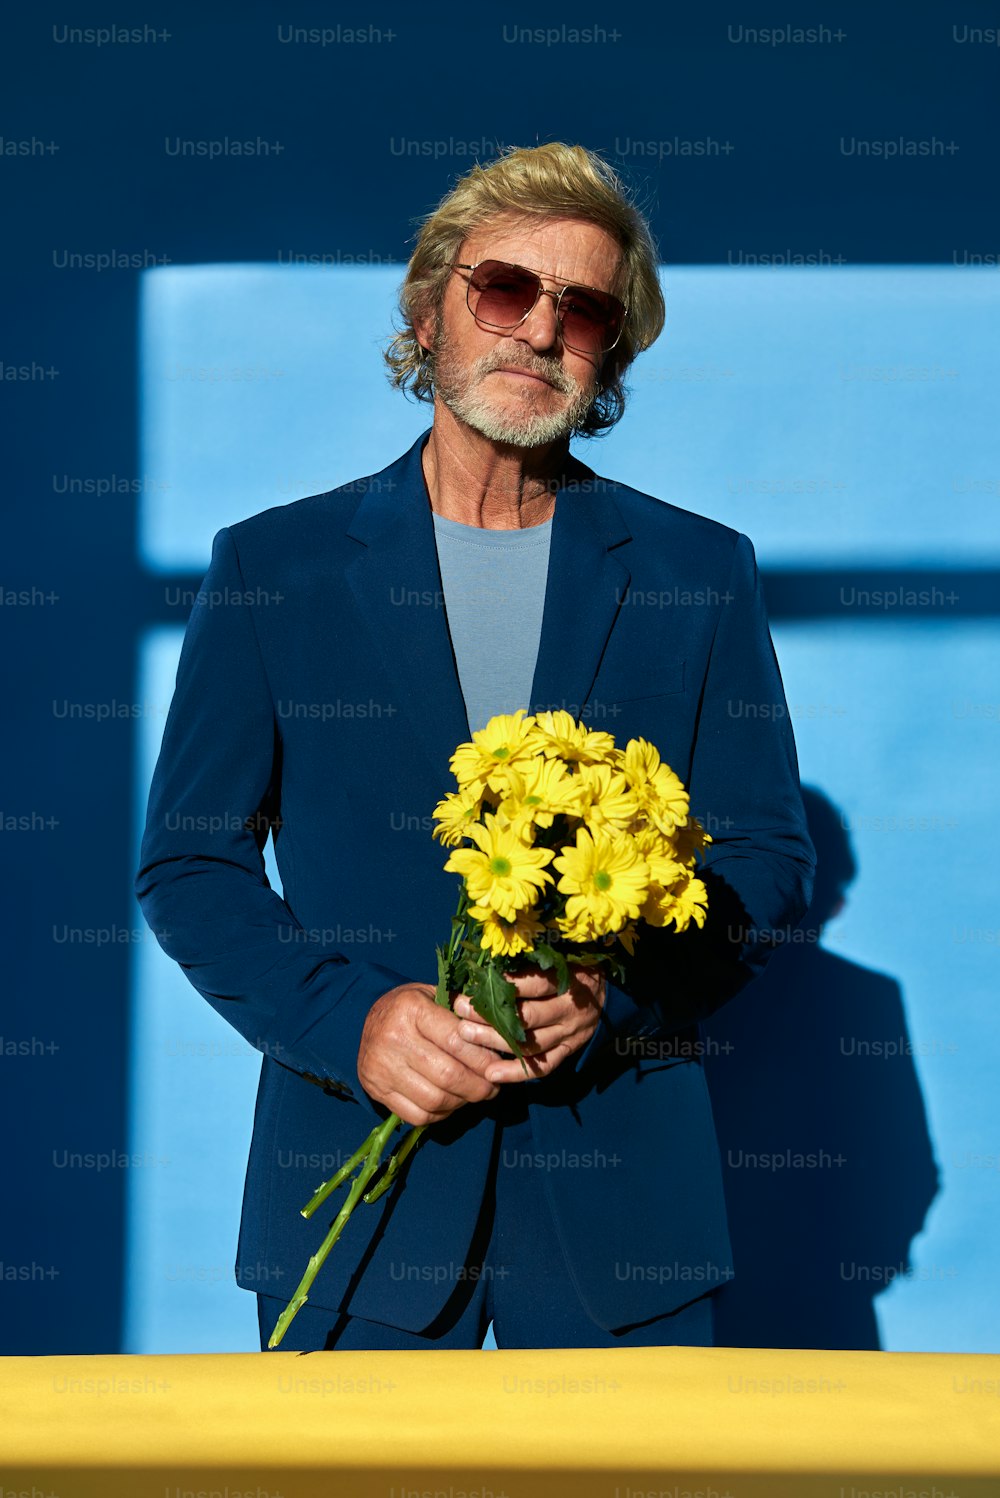 Un homme en costume tenant un bouquet de fleurs